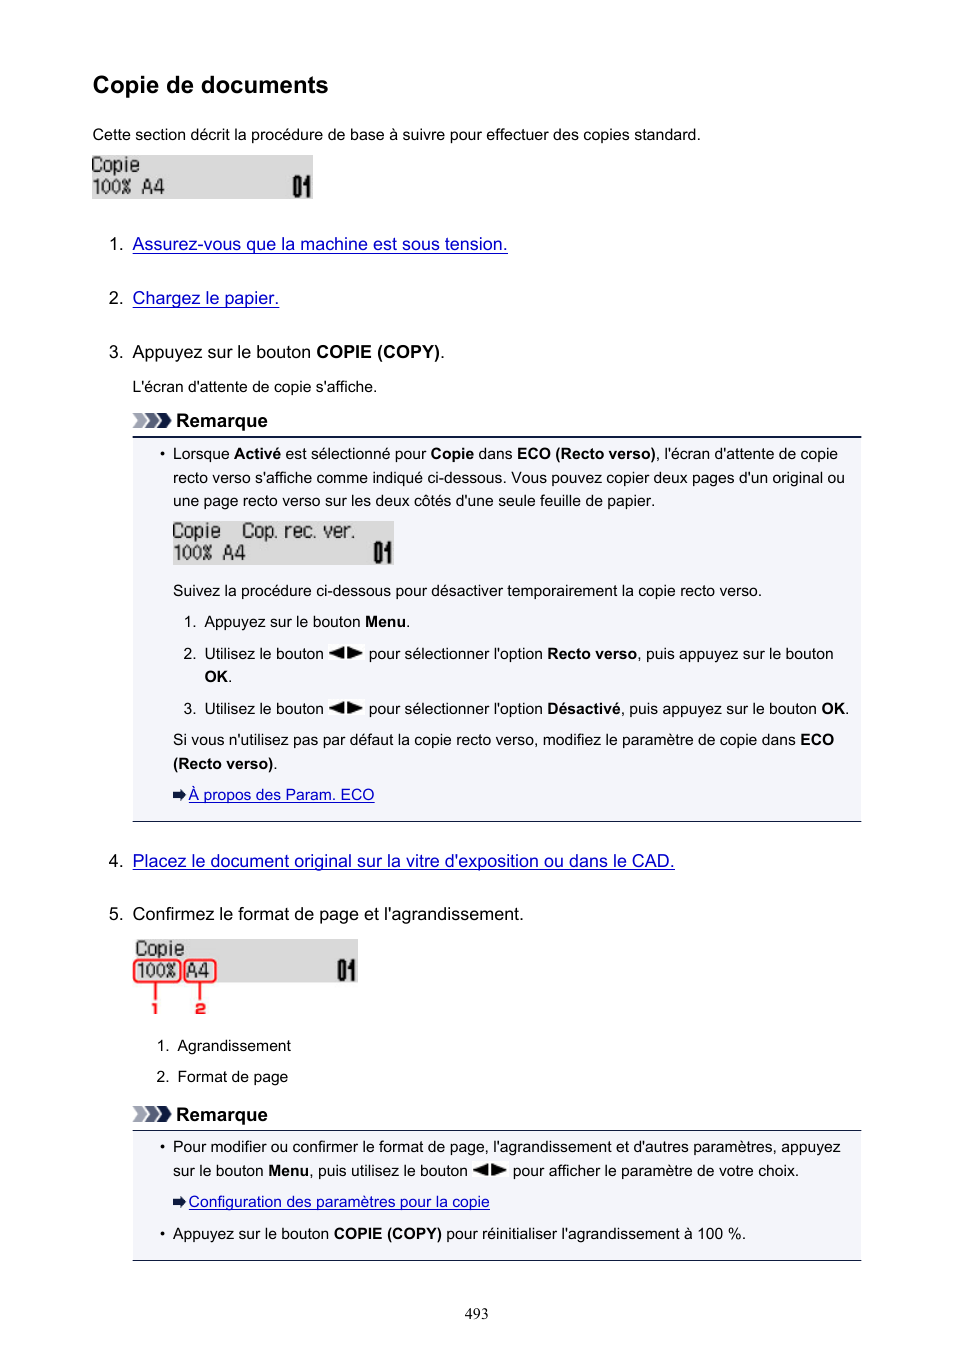 Copie de documents | Canon PIXMA MX535 Manuel d'utilisation | Page 493 / 1066